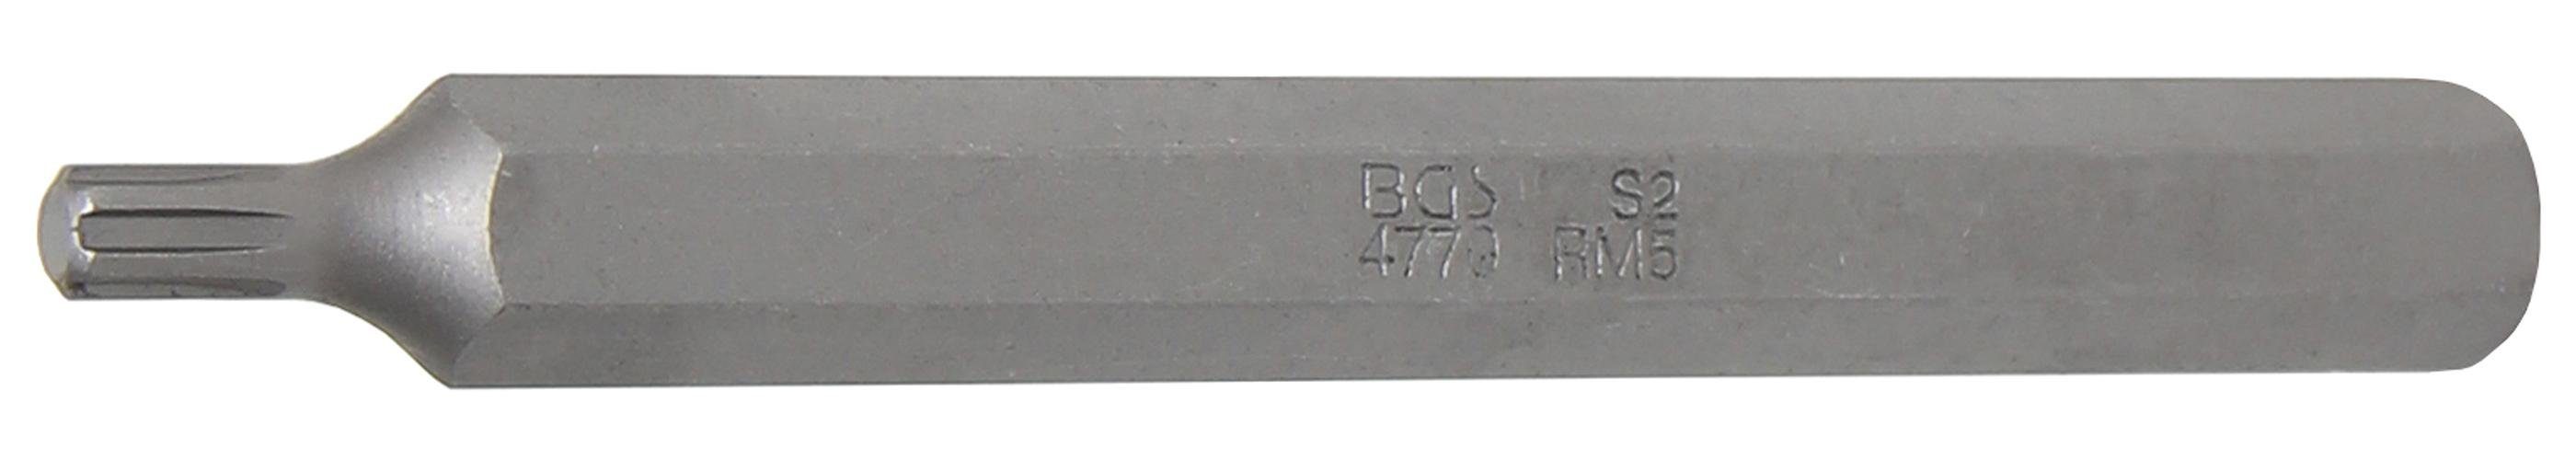 BGS technic Bit-Schraubendreher Bit, Länge 100 mm, Antrieb Außensechskant 10 mm (3/8), Keil-Profil (für RIBE) M5